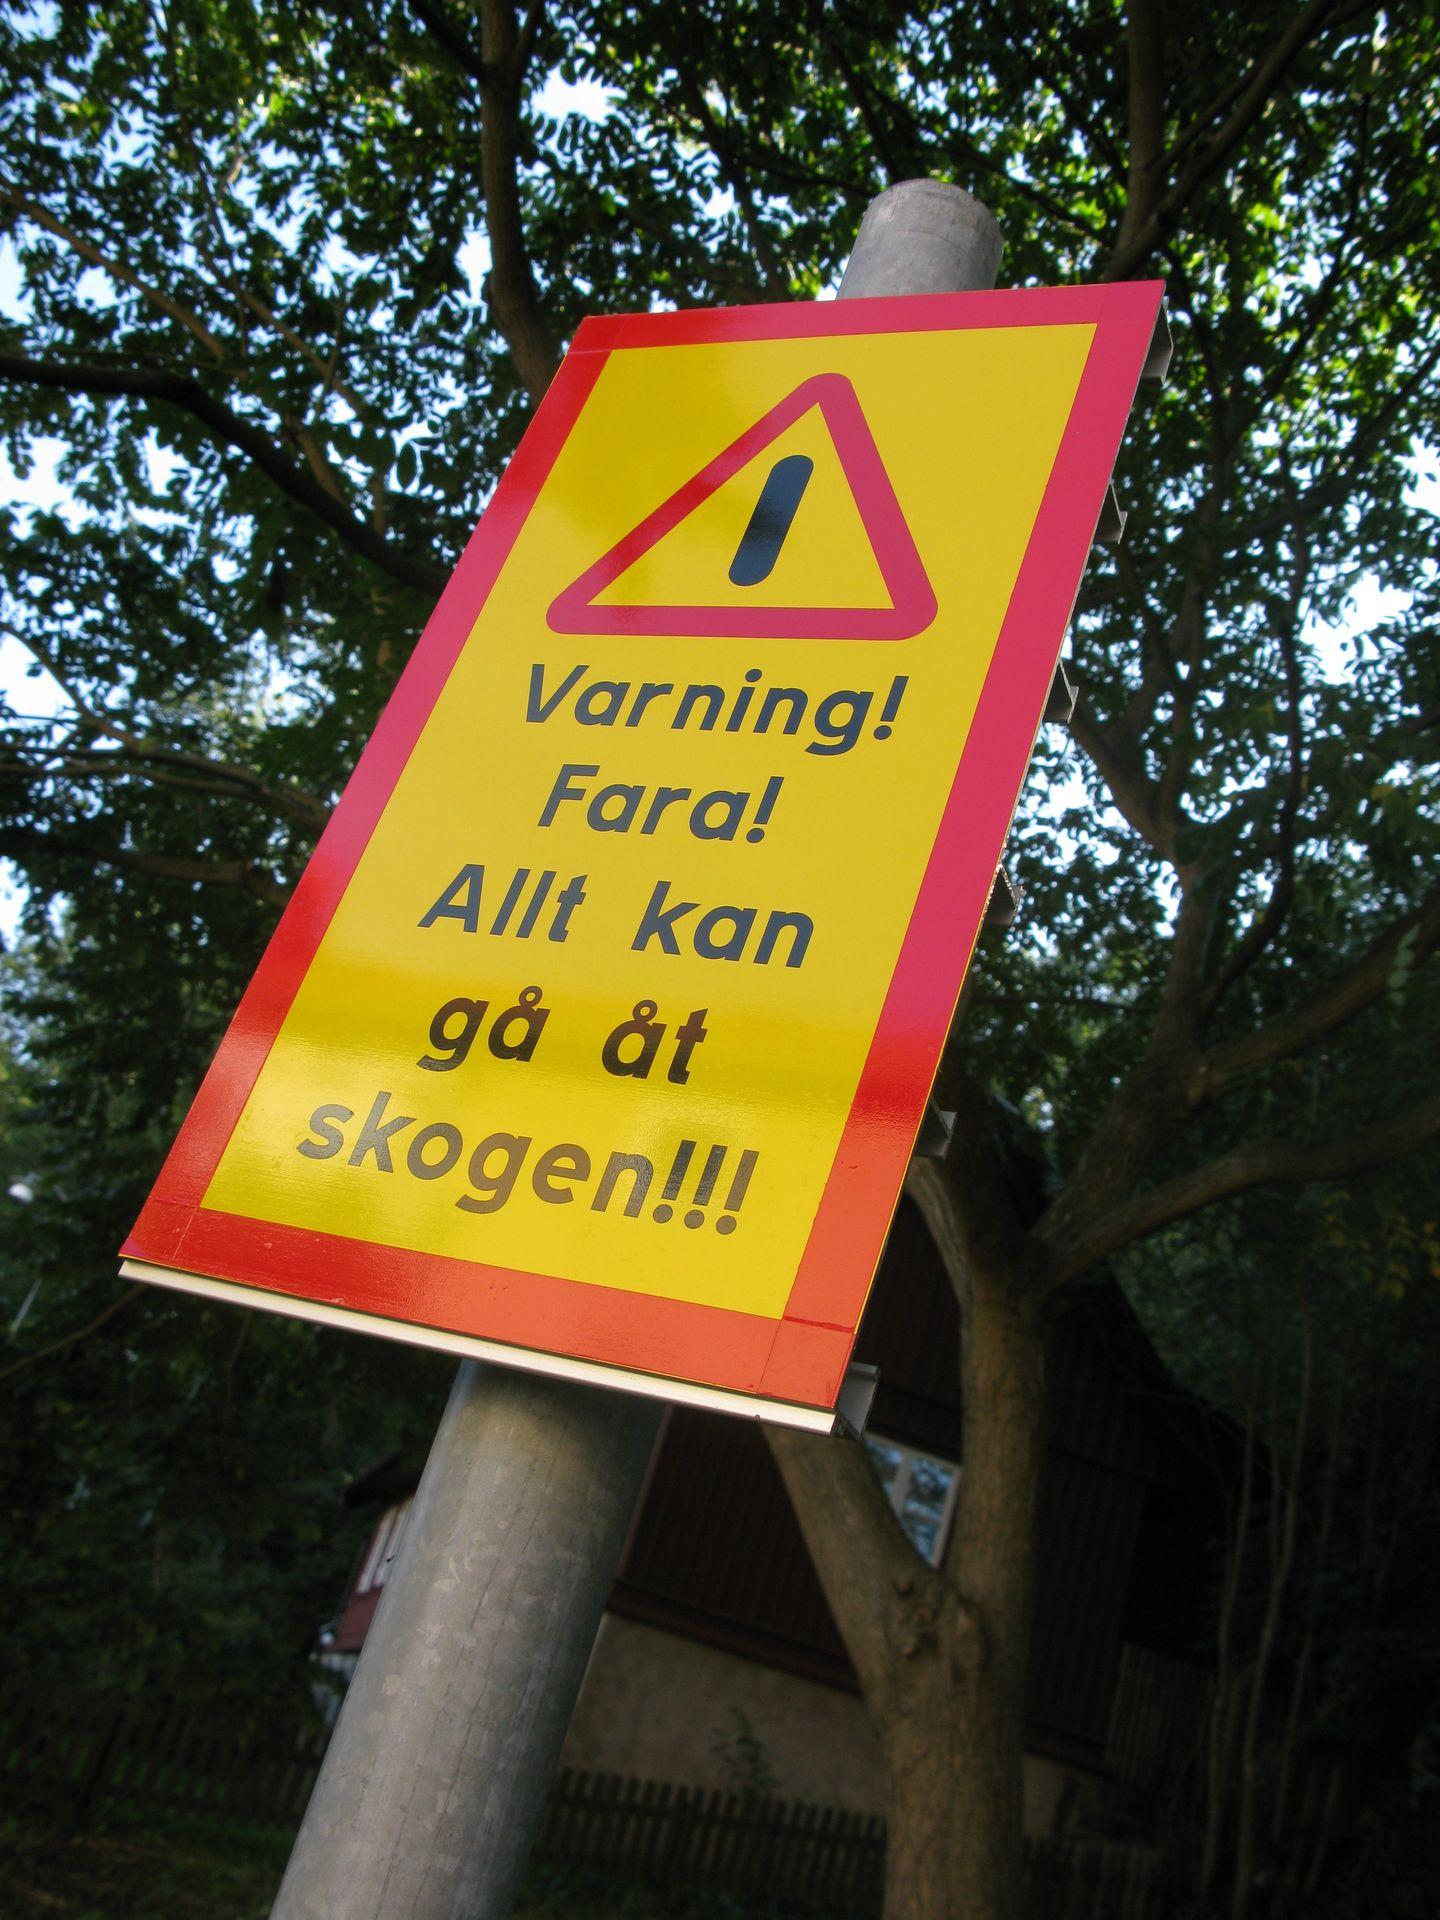 Domedagsprofetia. "En skylt i Göteborg. Vet ej vad de var för fara den varnade för", skriver Mattias.